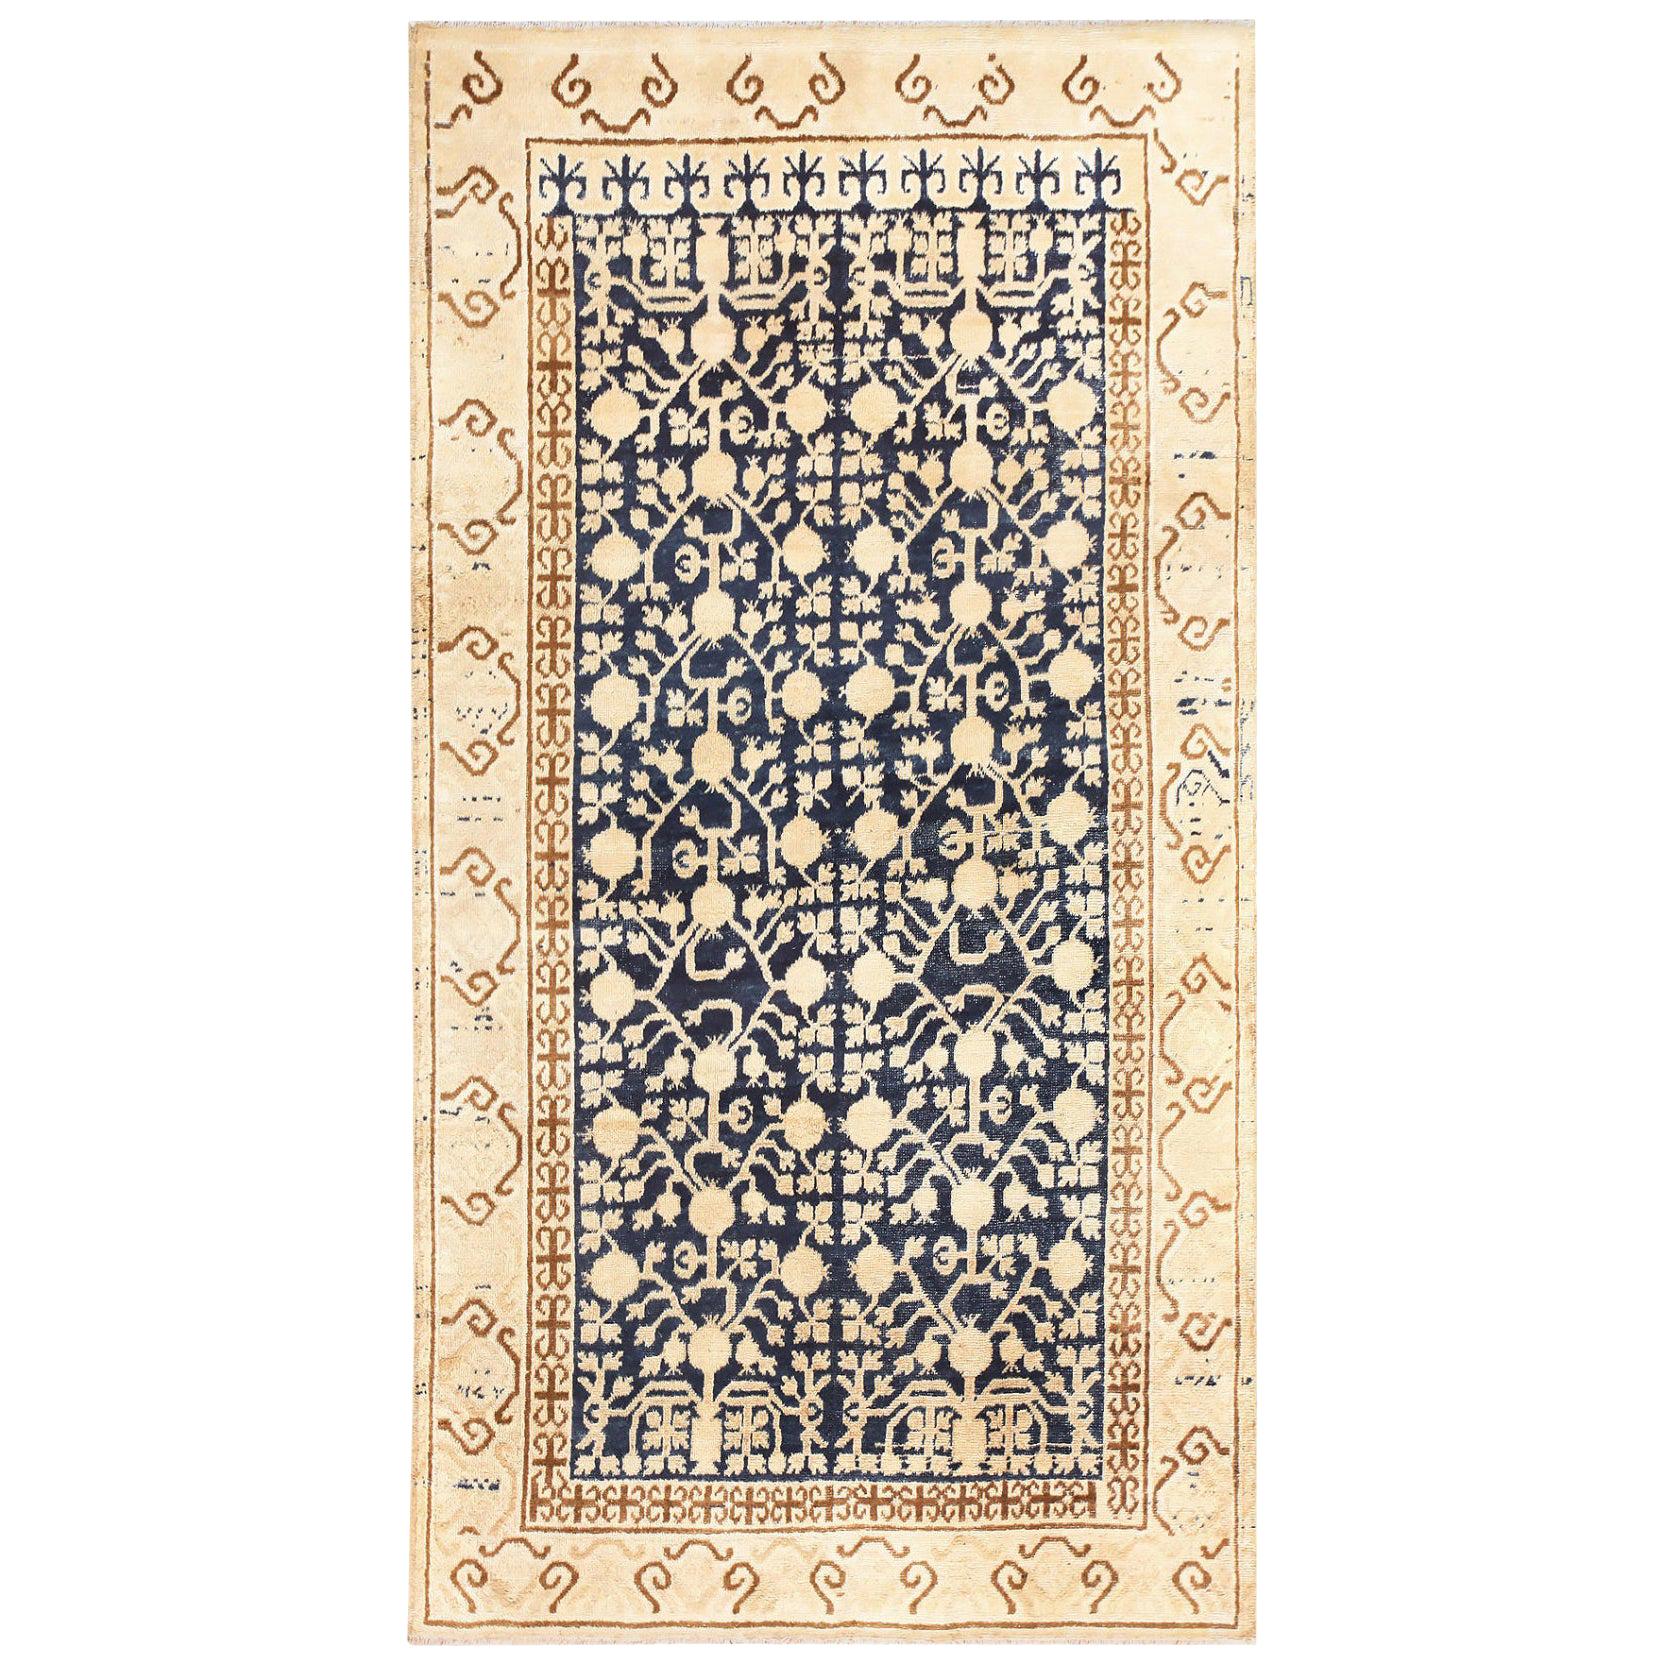 Antiker Khotan-Teppich in Granatapfel-Design. Größe: 4 ft 6 in x 8 ft 3 in